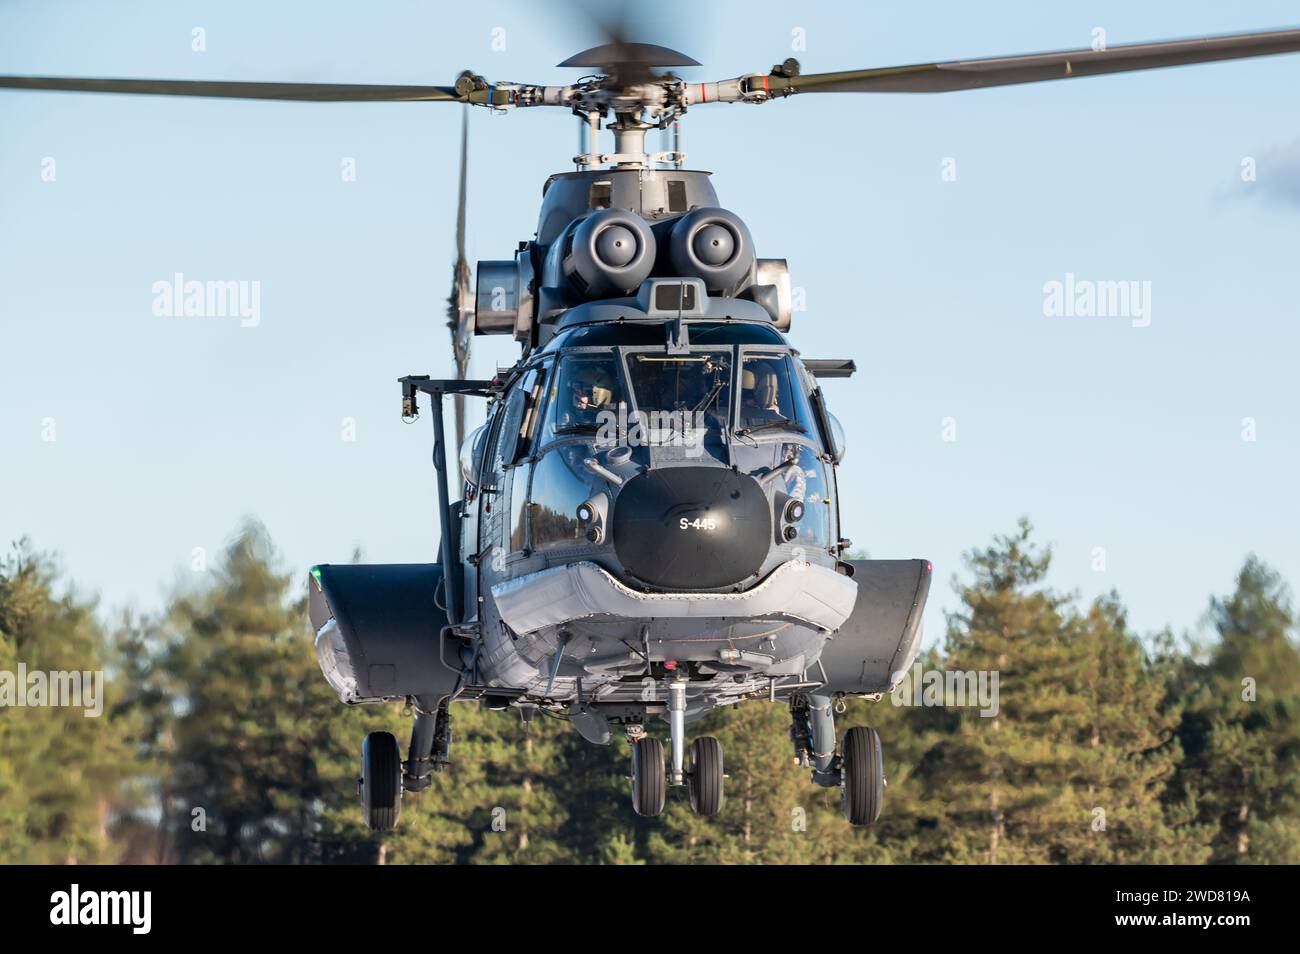 Un hélicoptère militaire Eurocopter AS532 Cougar du 300e escadron de la Rpyal Netherlands Air Force. Banque D'Images